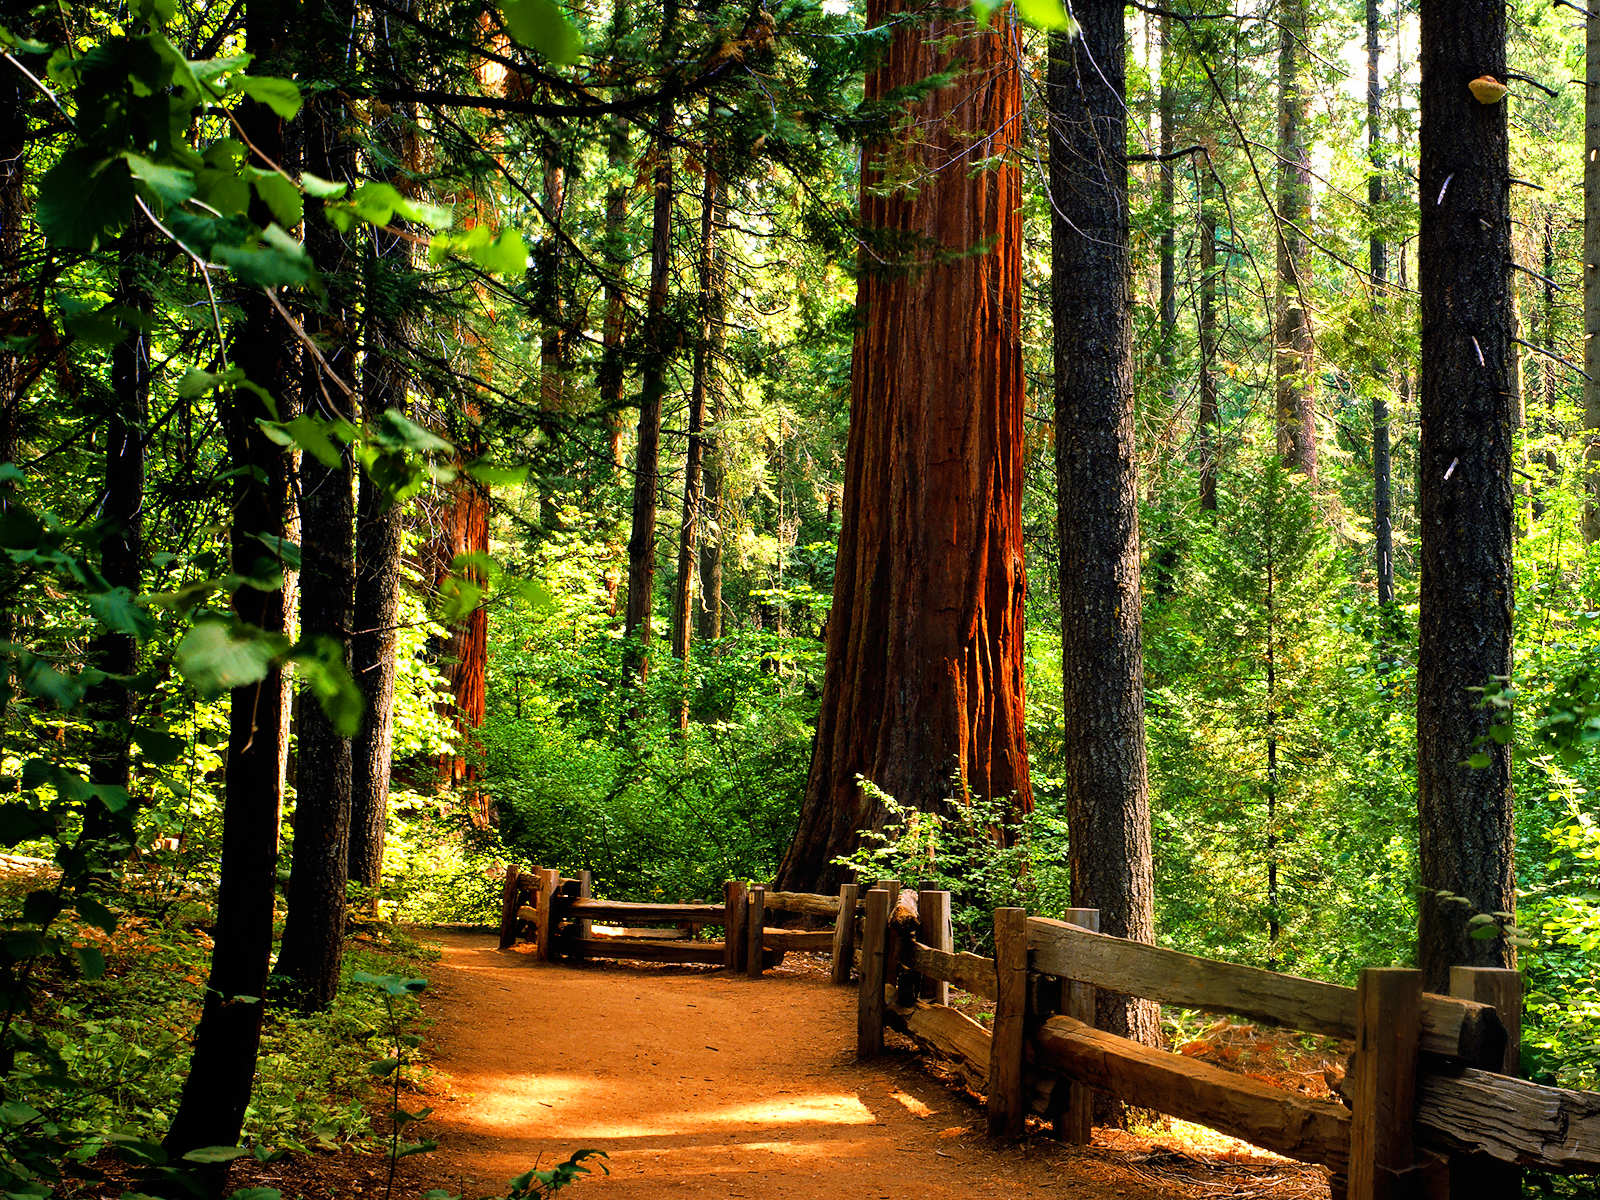 Không gì đẹp hơn khi lựa chọn hình nền Redwoods cho máy tính của bạn. Ảnh sẽ mang lại cho bạn cảm giác như đang đứng giữa rừng và trải nghiệm sự thanh tịnh và bình yên mà rừng mang lại.